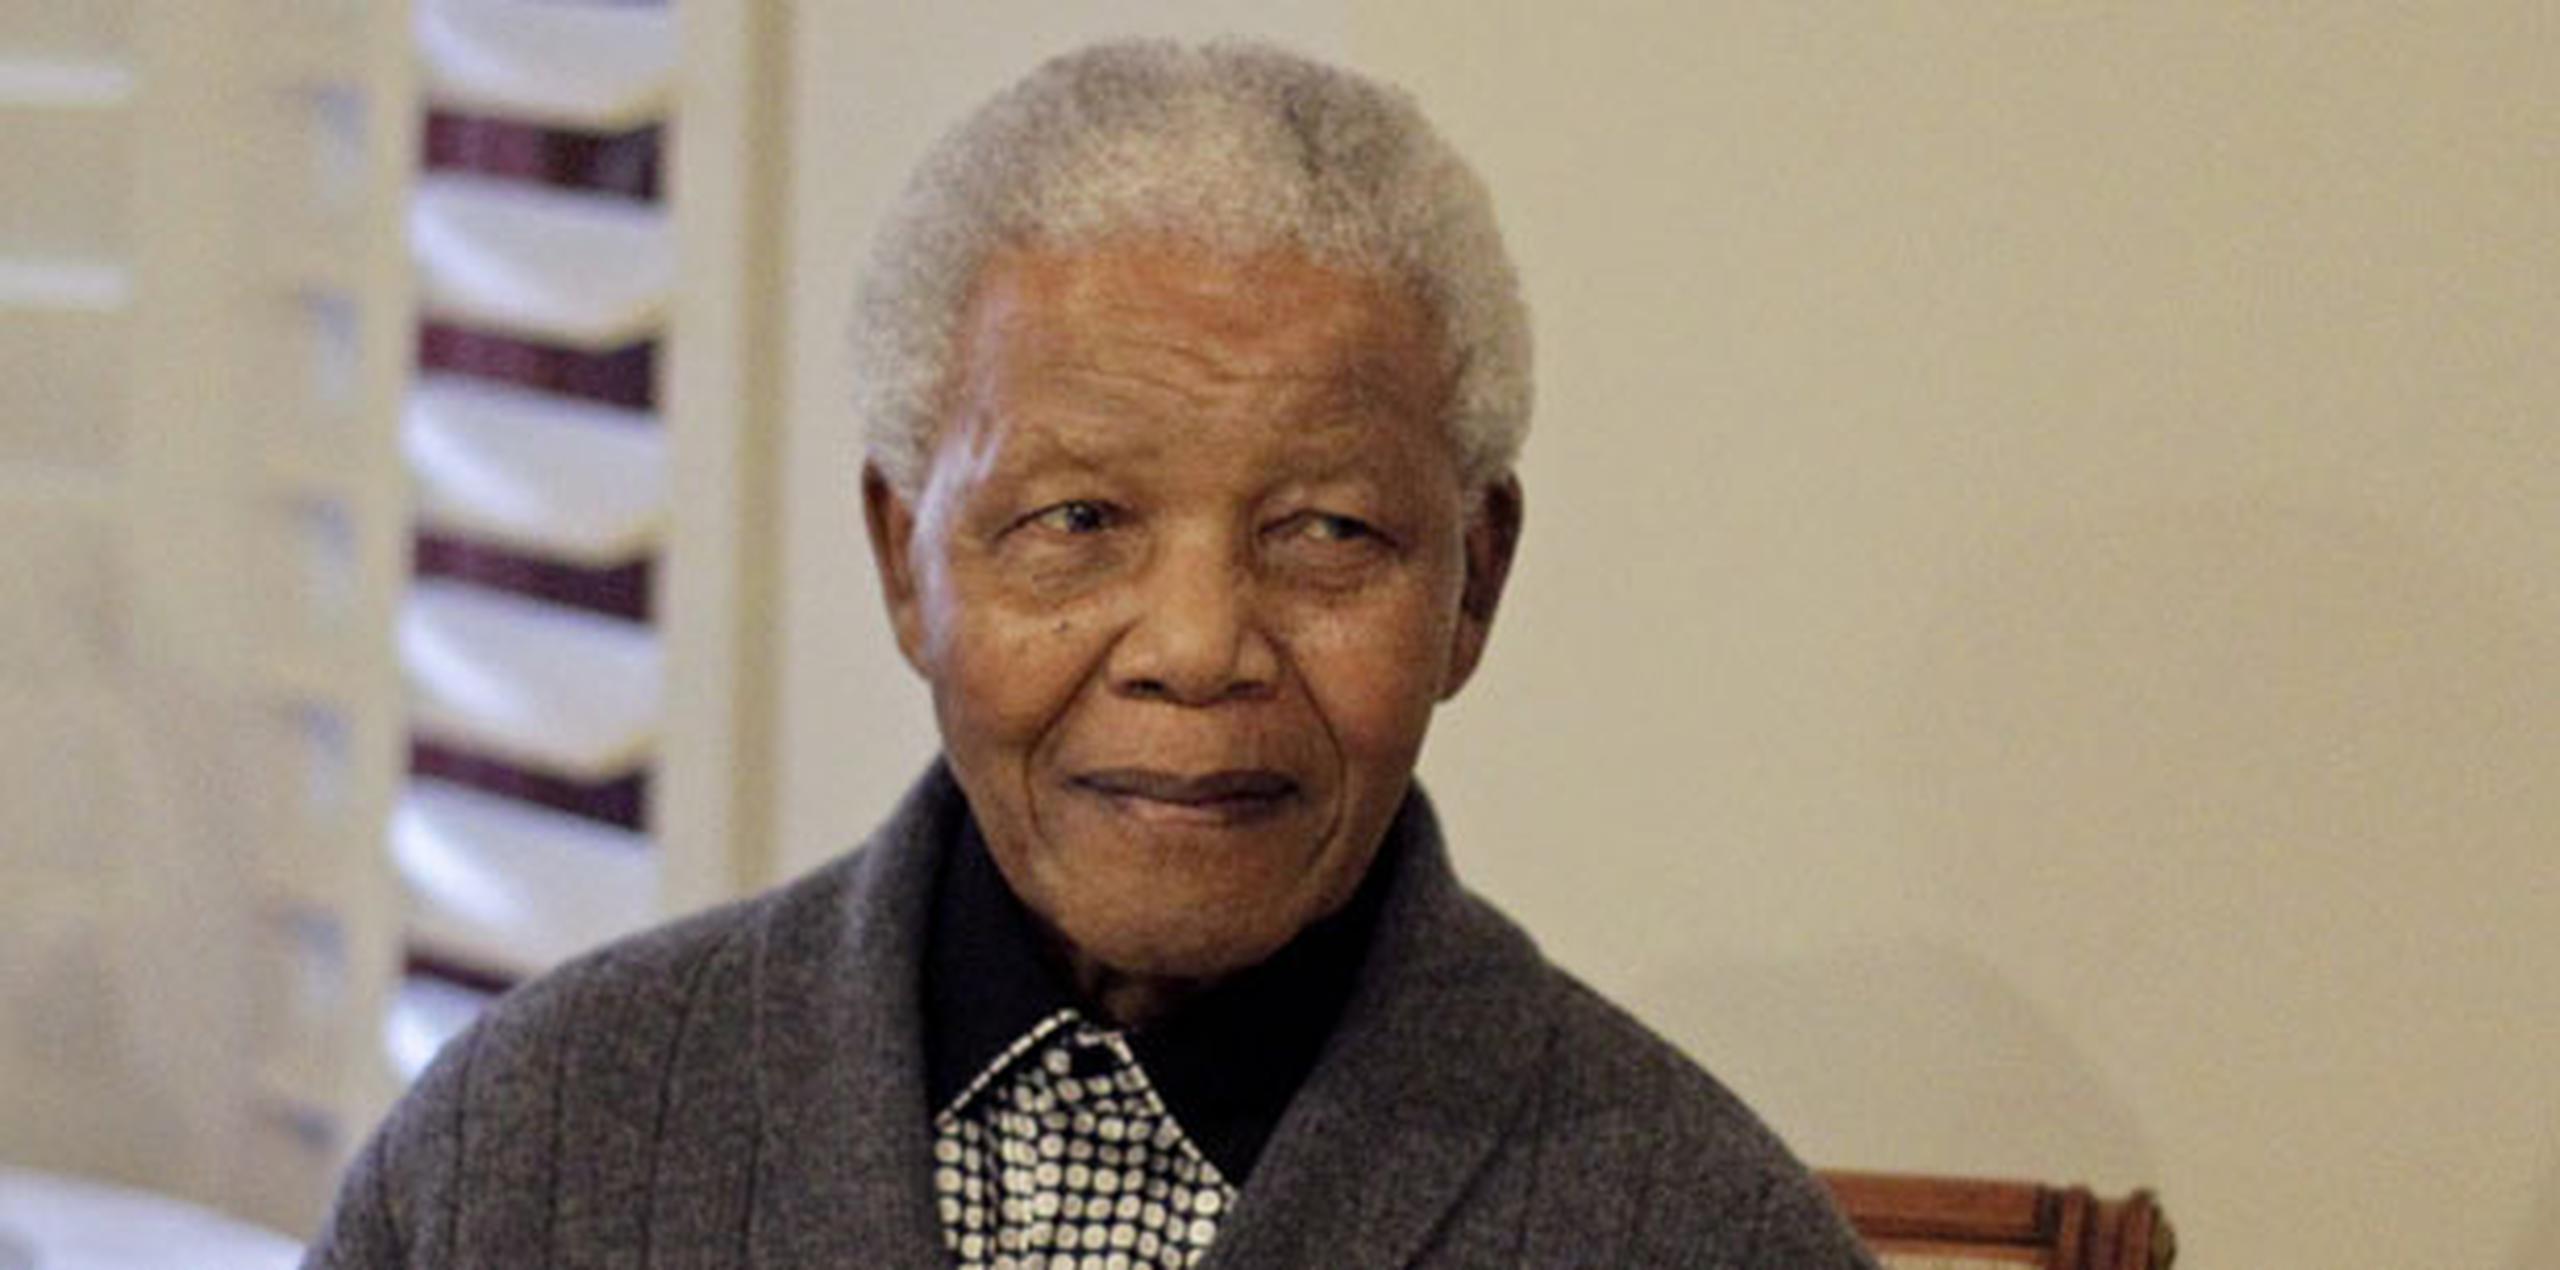 La pugna familiar se ha producido mientras Mandela, de 94 años, sigue grave el domingo en un hospital. (Archivo)